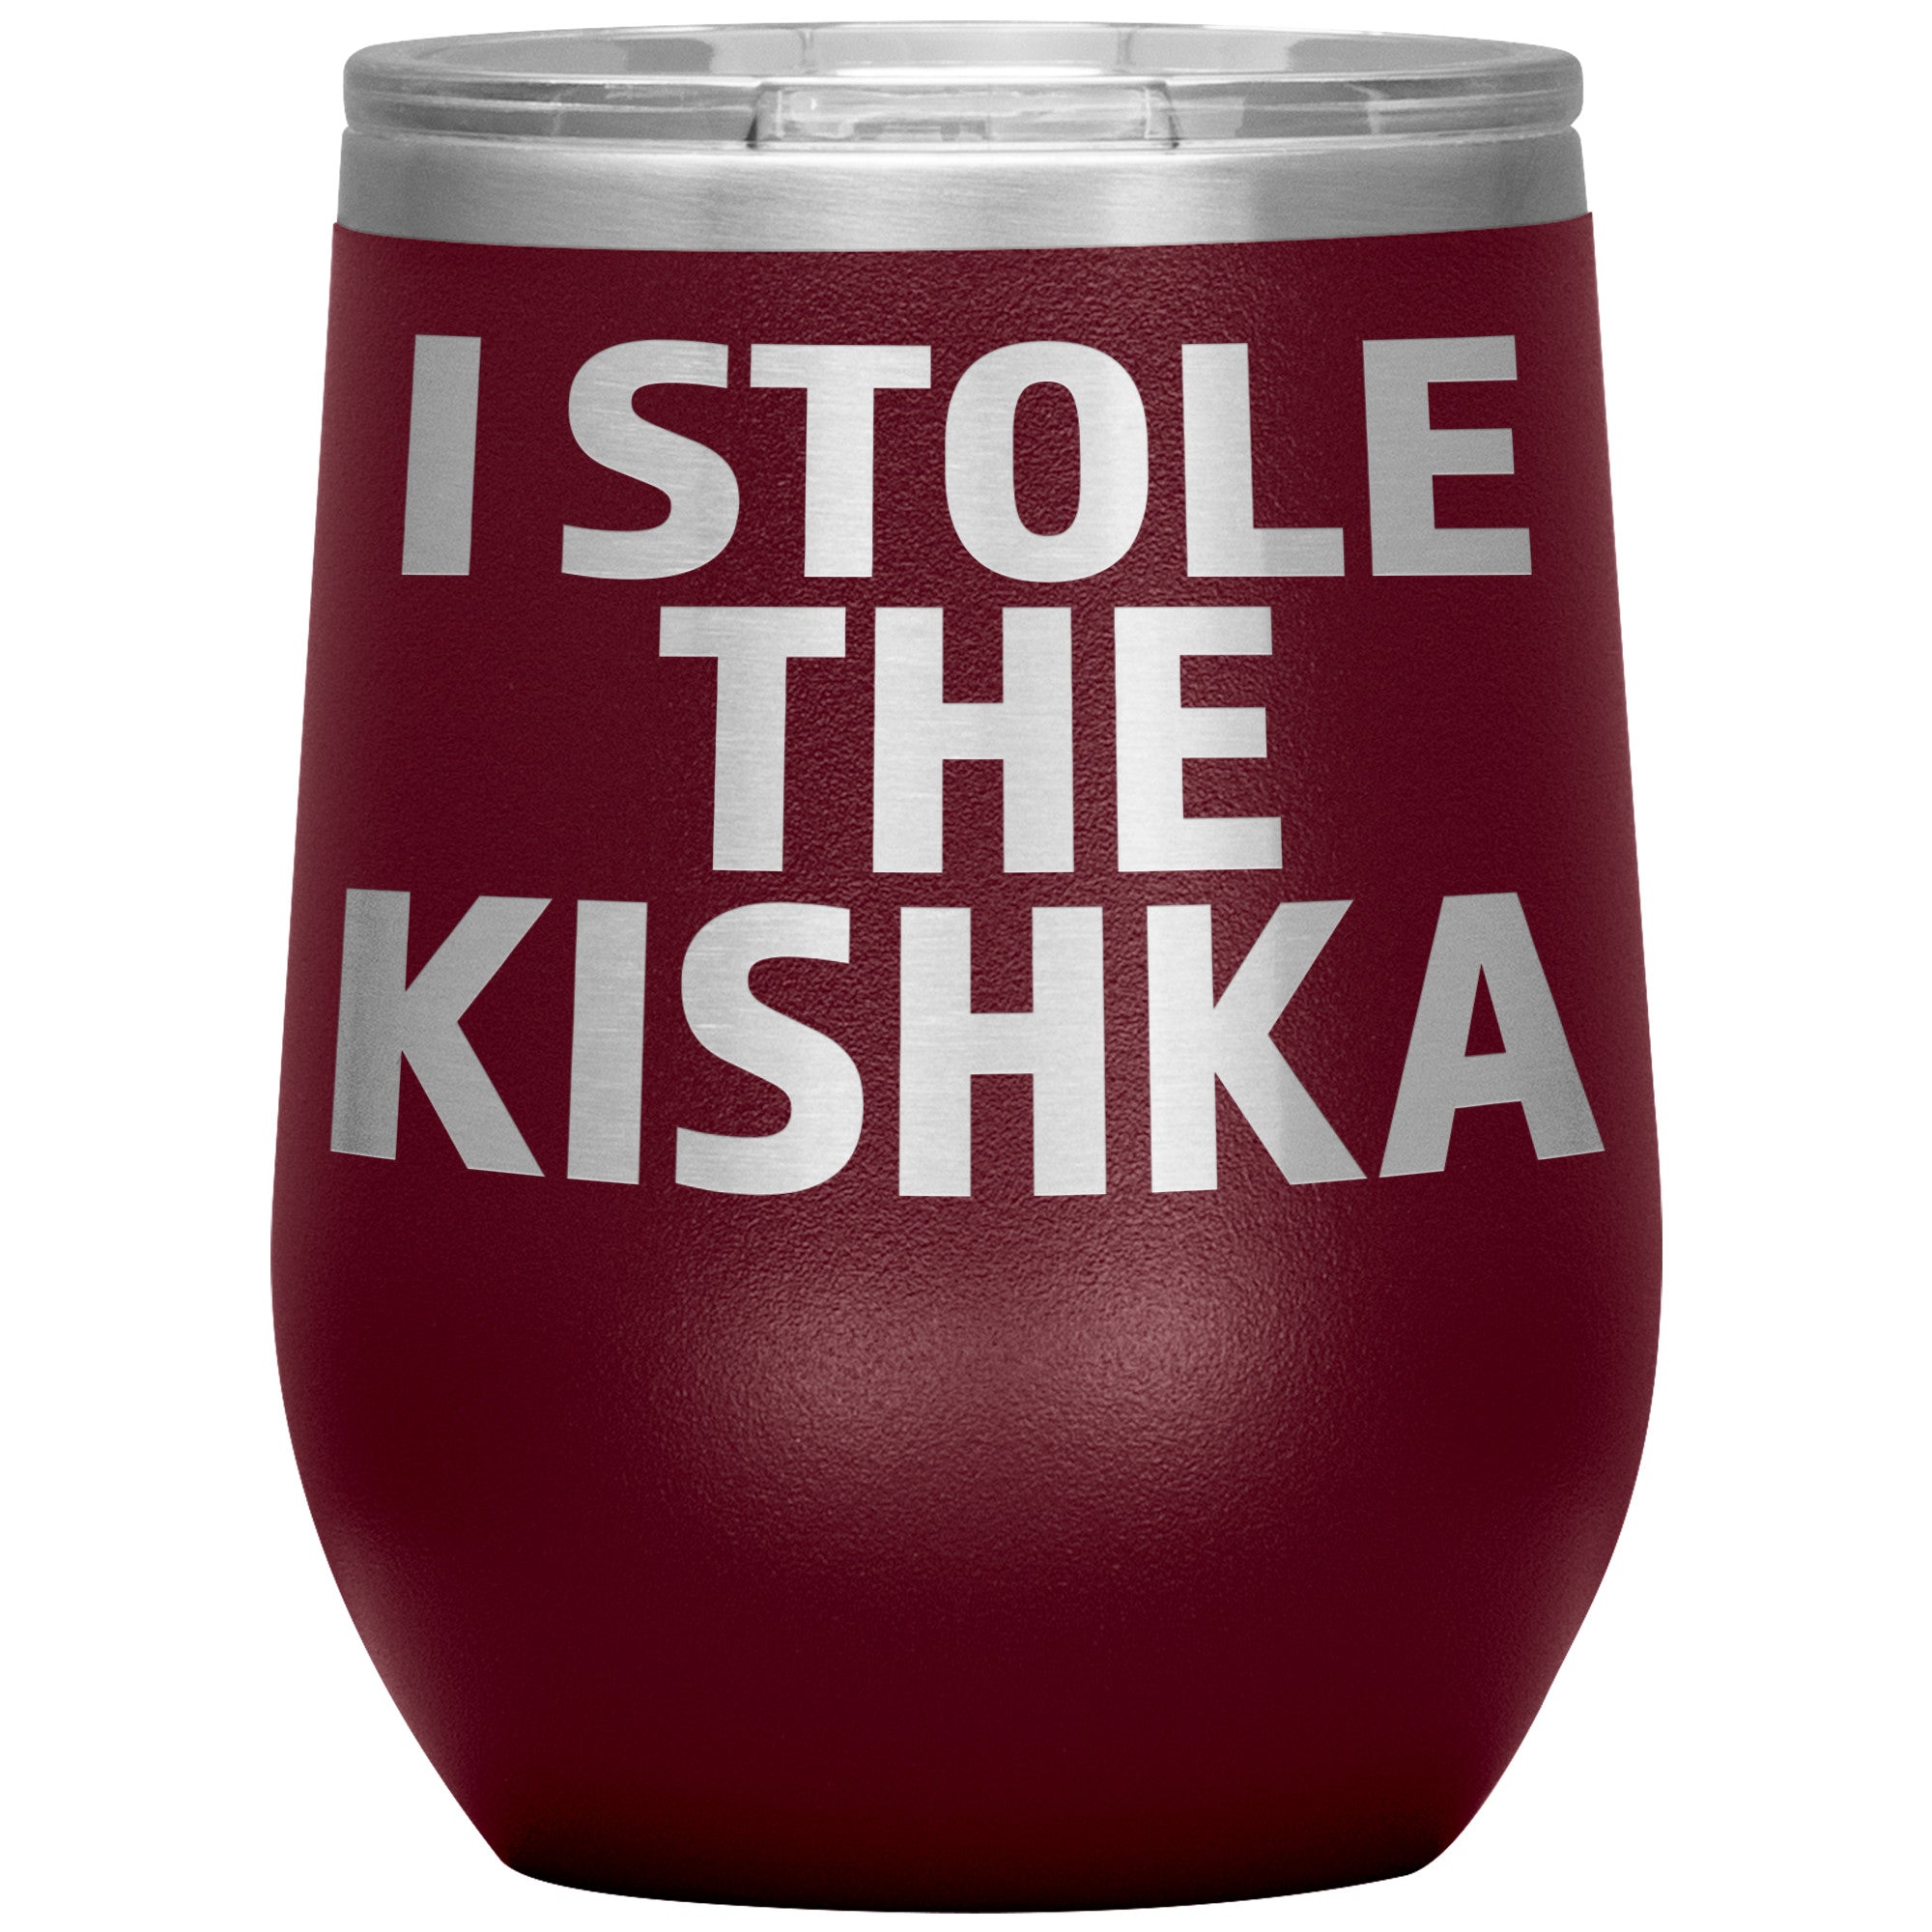 I Stole The Kishka Insulated Wine Tumbler Tumblers teelaunch Maroon  